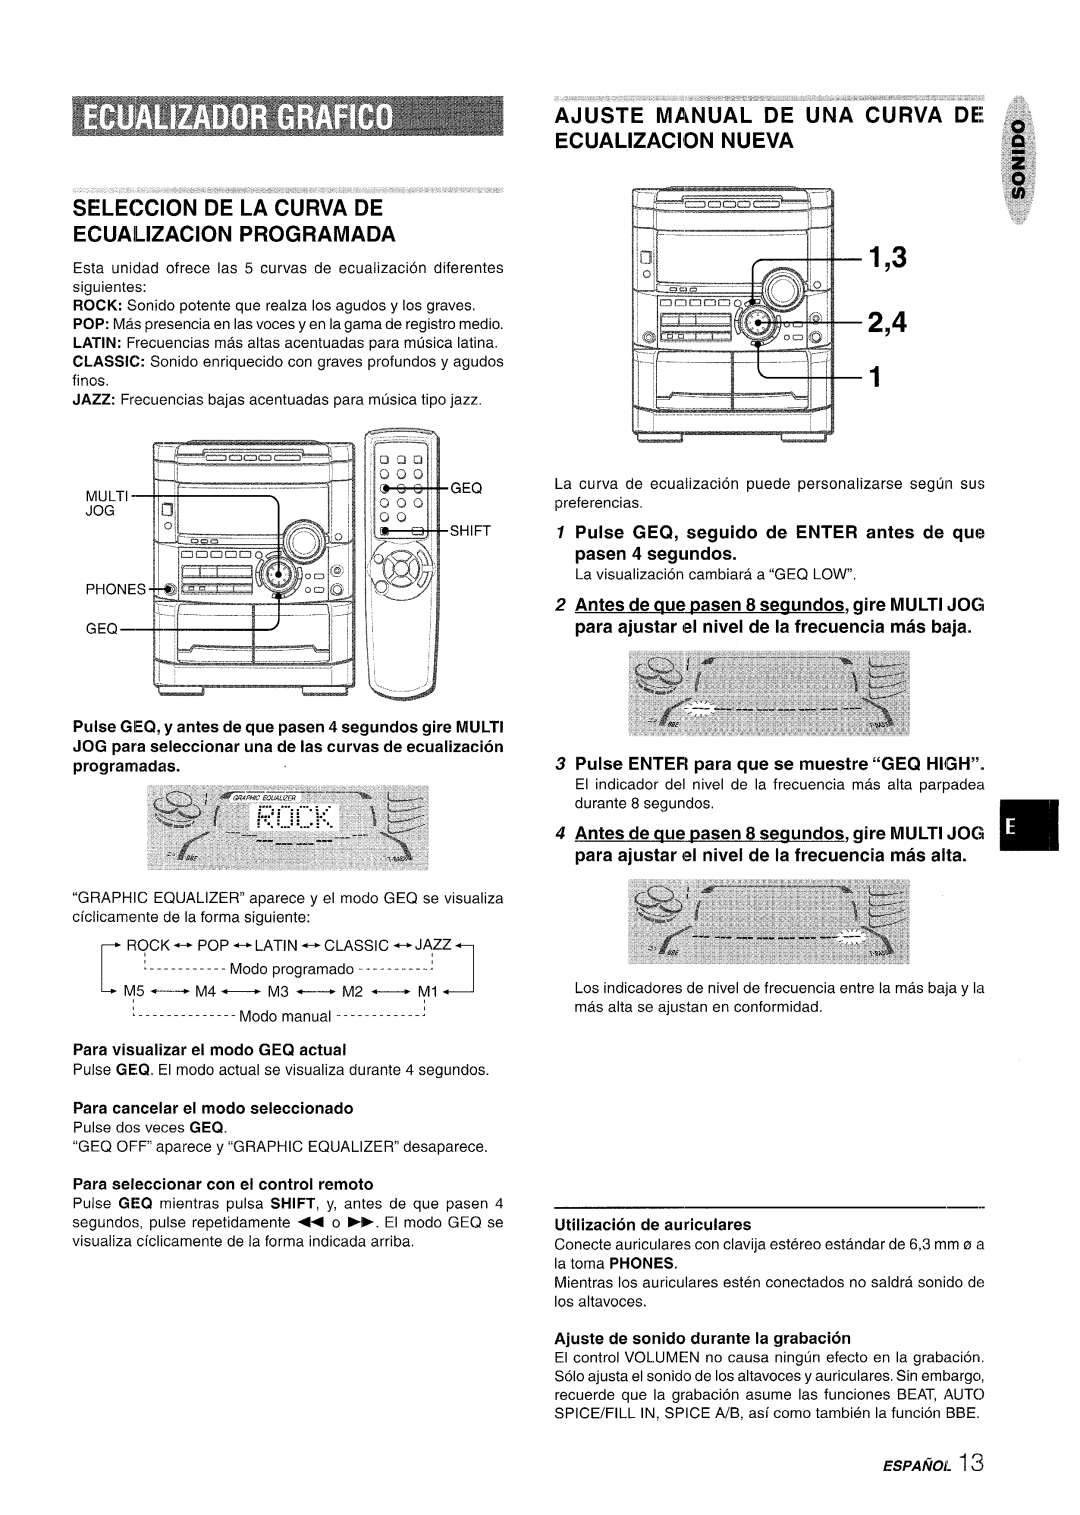 Sony NSX-A777 manual Seleccion De La Curva De, Ecuailizacion Programada, Ecualizacion Nueva, 1,3 2,4, ESPAMOL 1~ 